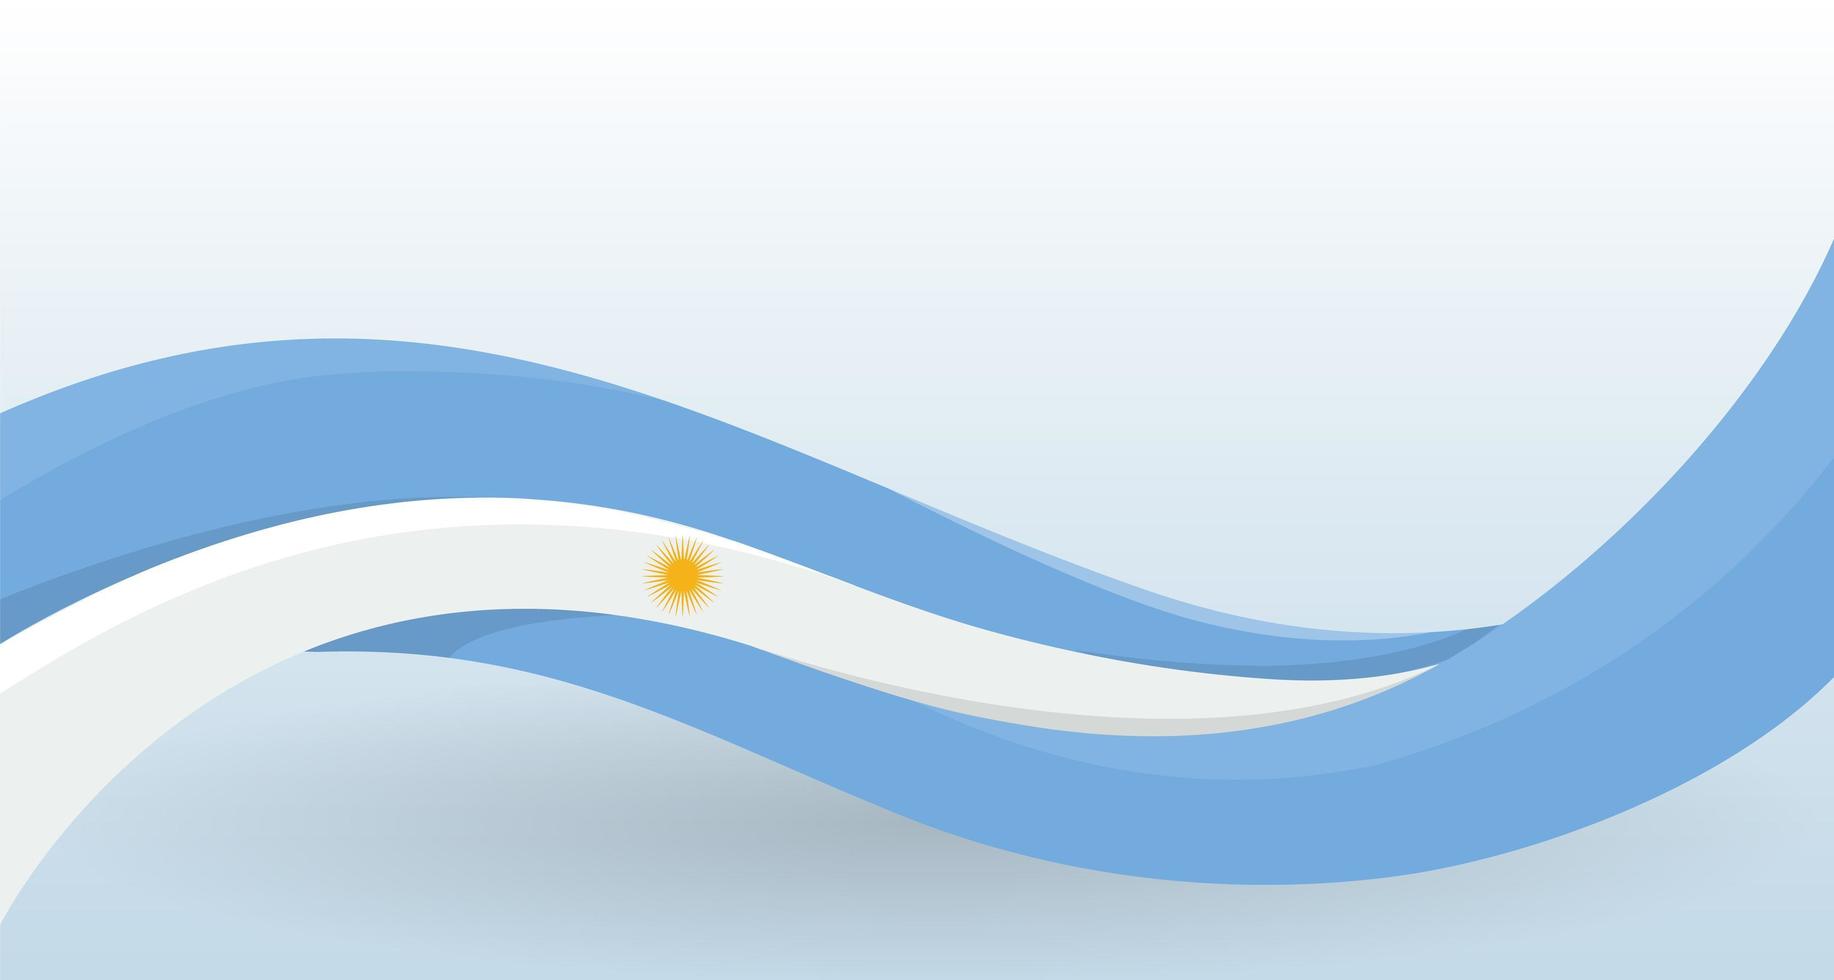 bandiera nazionale argentina. ondeggiante forma insolita. modello di progettazione per la decorazione di volantini e biglietti, poster, banner e logo. illustrazione vettoriale isolato.